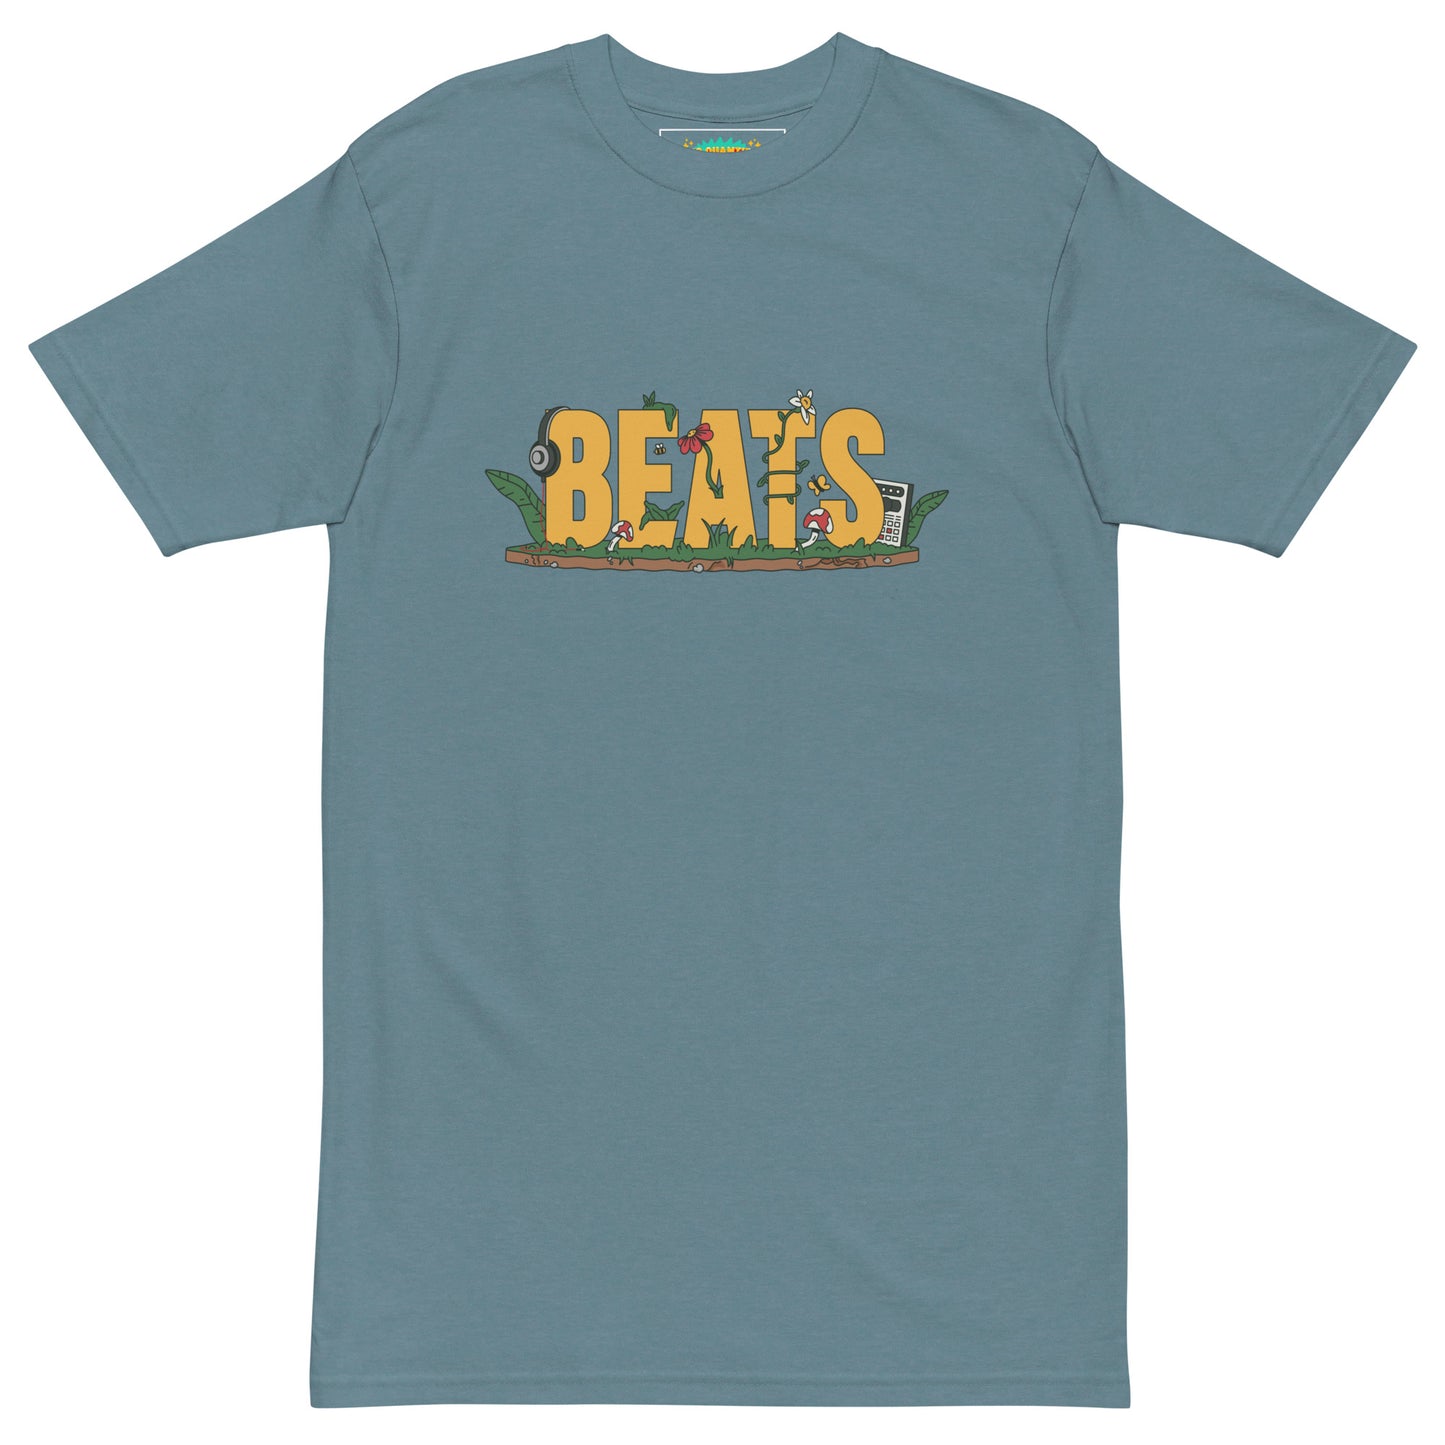 "BEATS" t-shirt